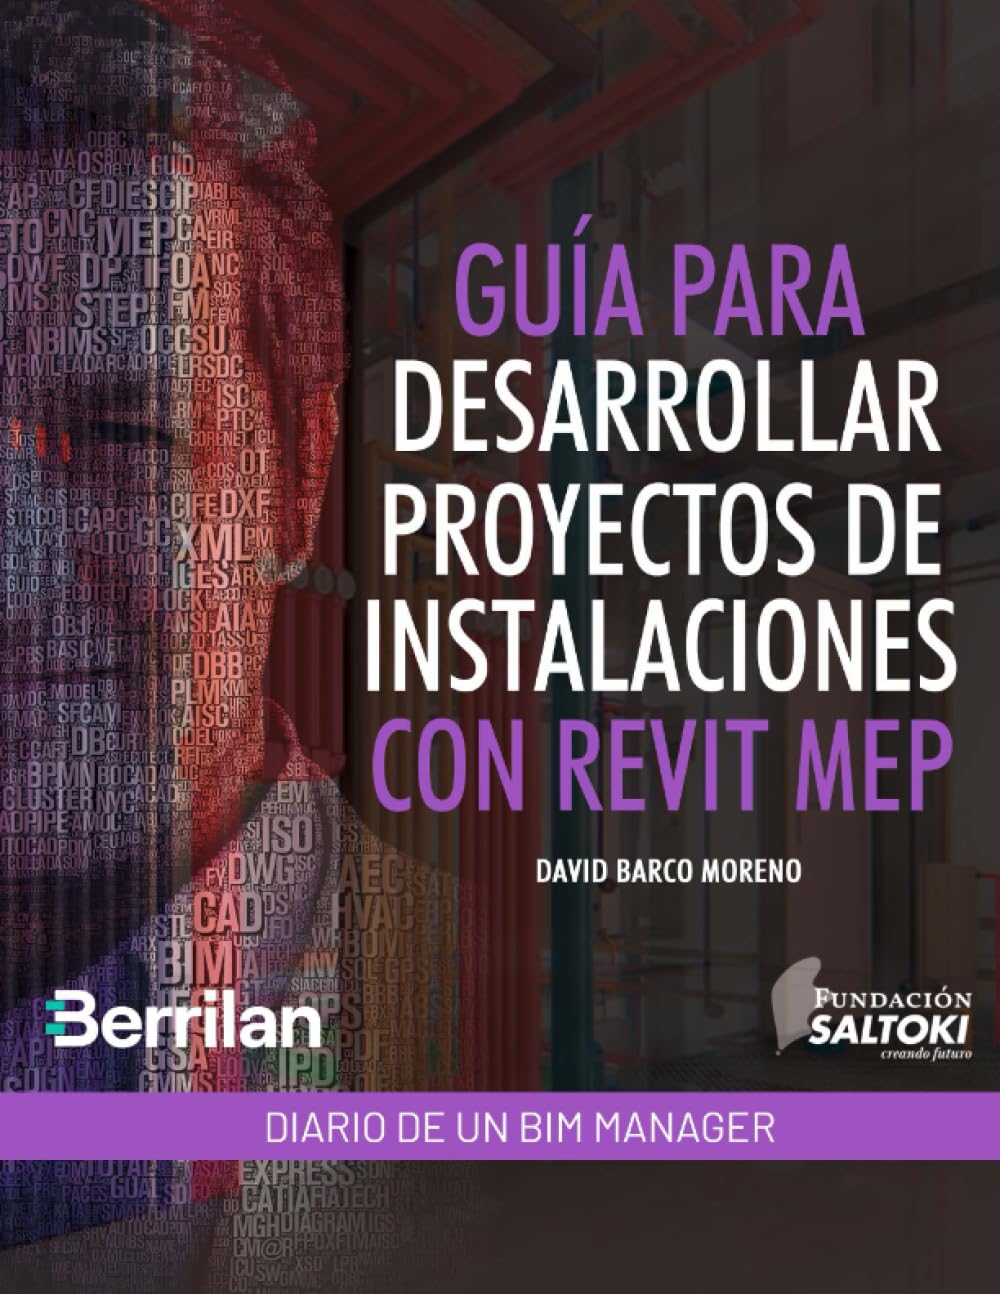 Diario de un BIM Manager: Guía para Desarrollar Proyectos de Instalaciones con Revit MEP (Spanish Edition)